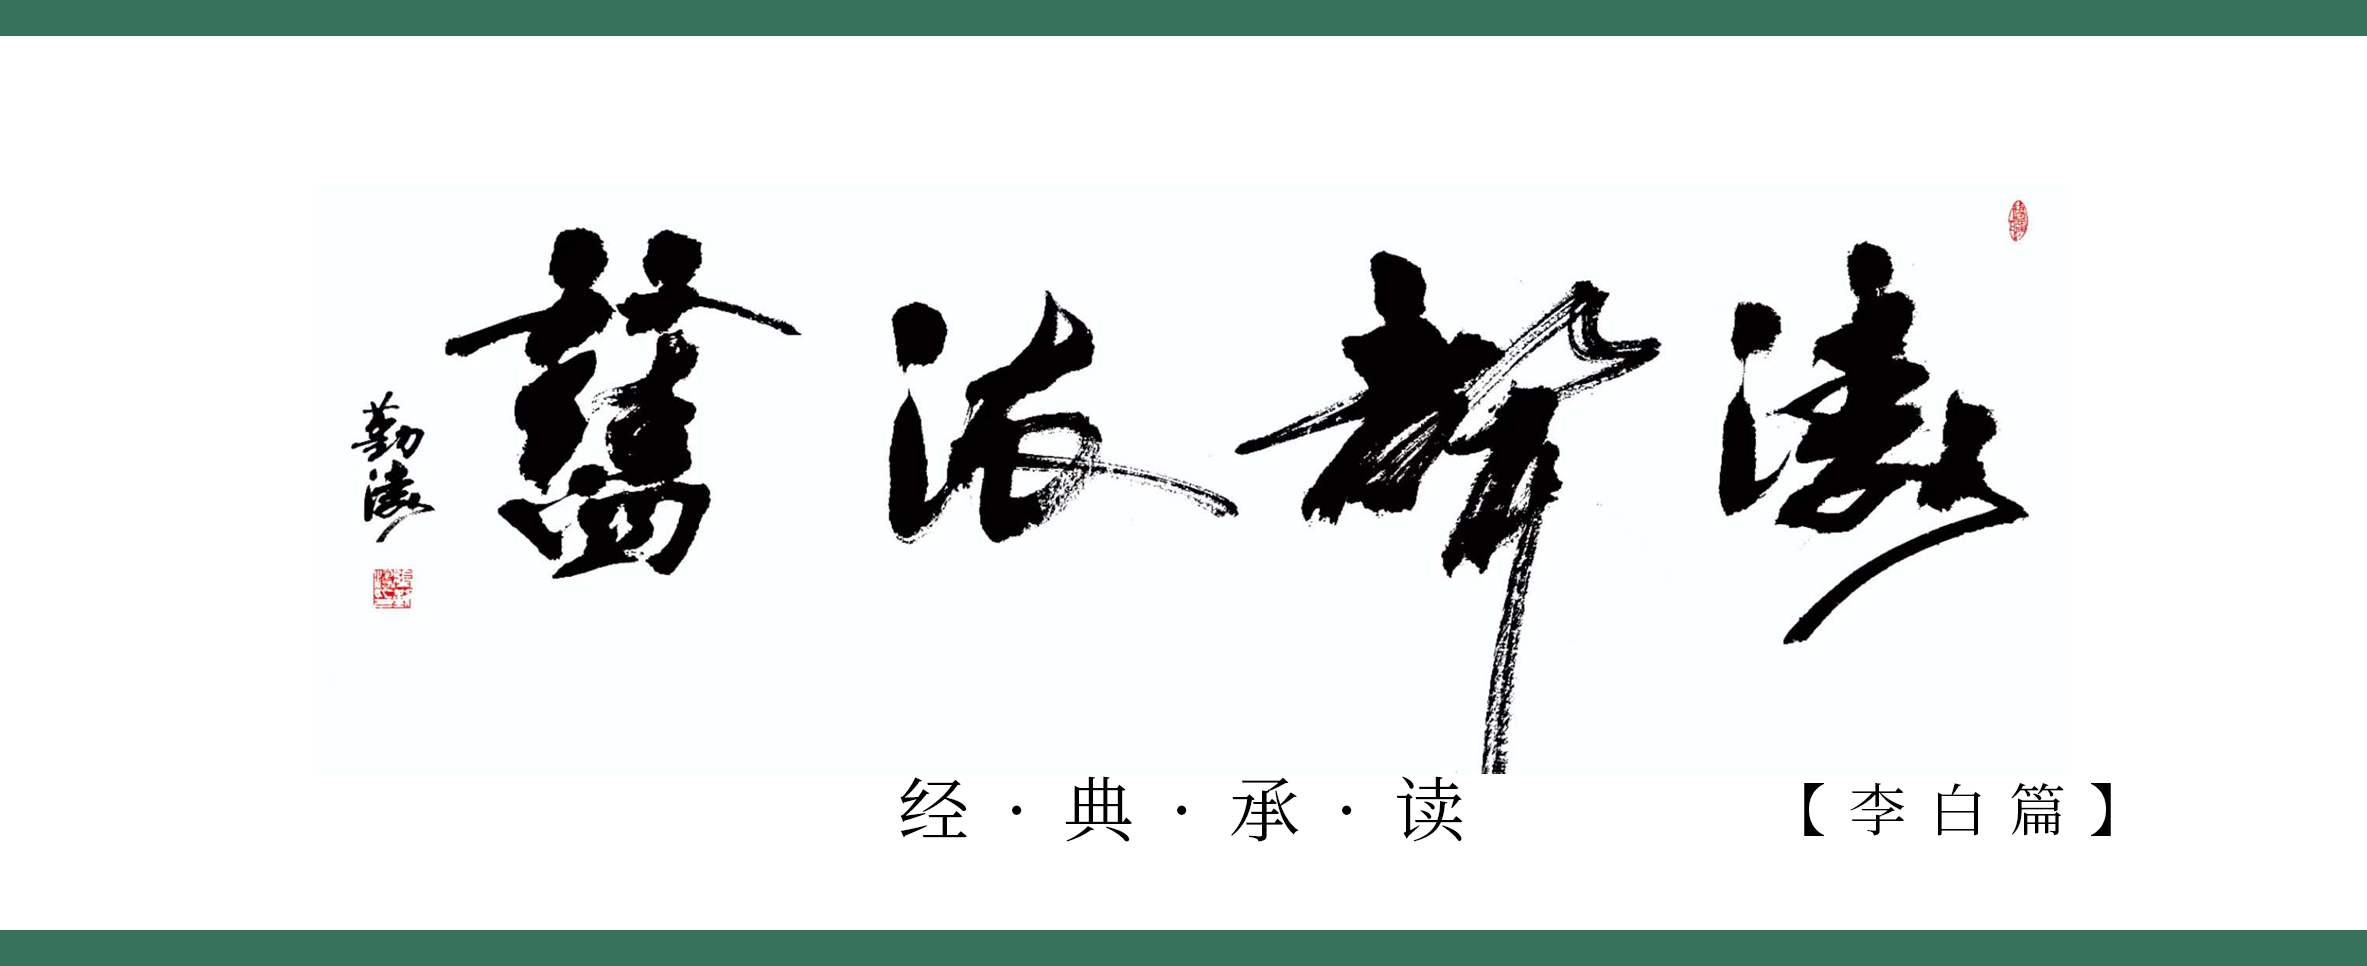 《涛声依旧 · 经典承读》——上皇西巡南京歌（其六）(图1)